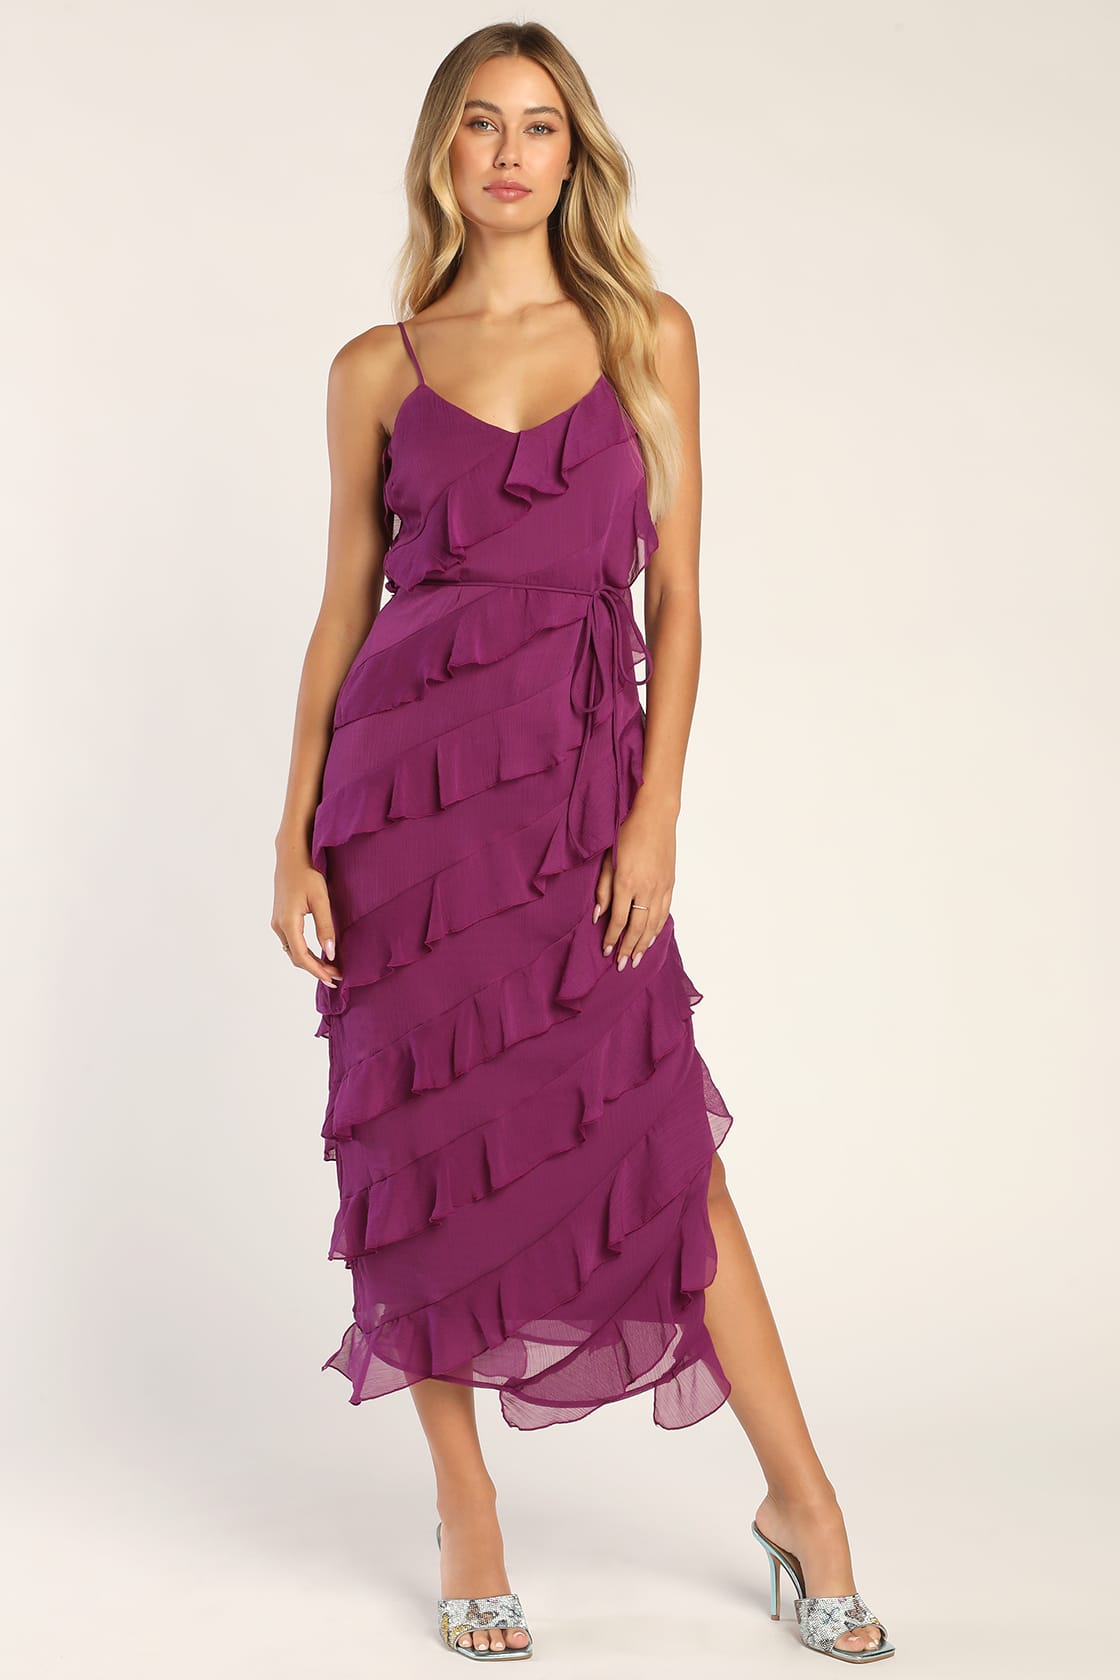 Purple Dress - Ruffled Midi Dress - Tiered Column Dress - Lulus